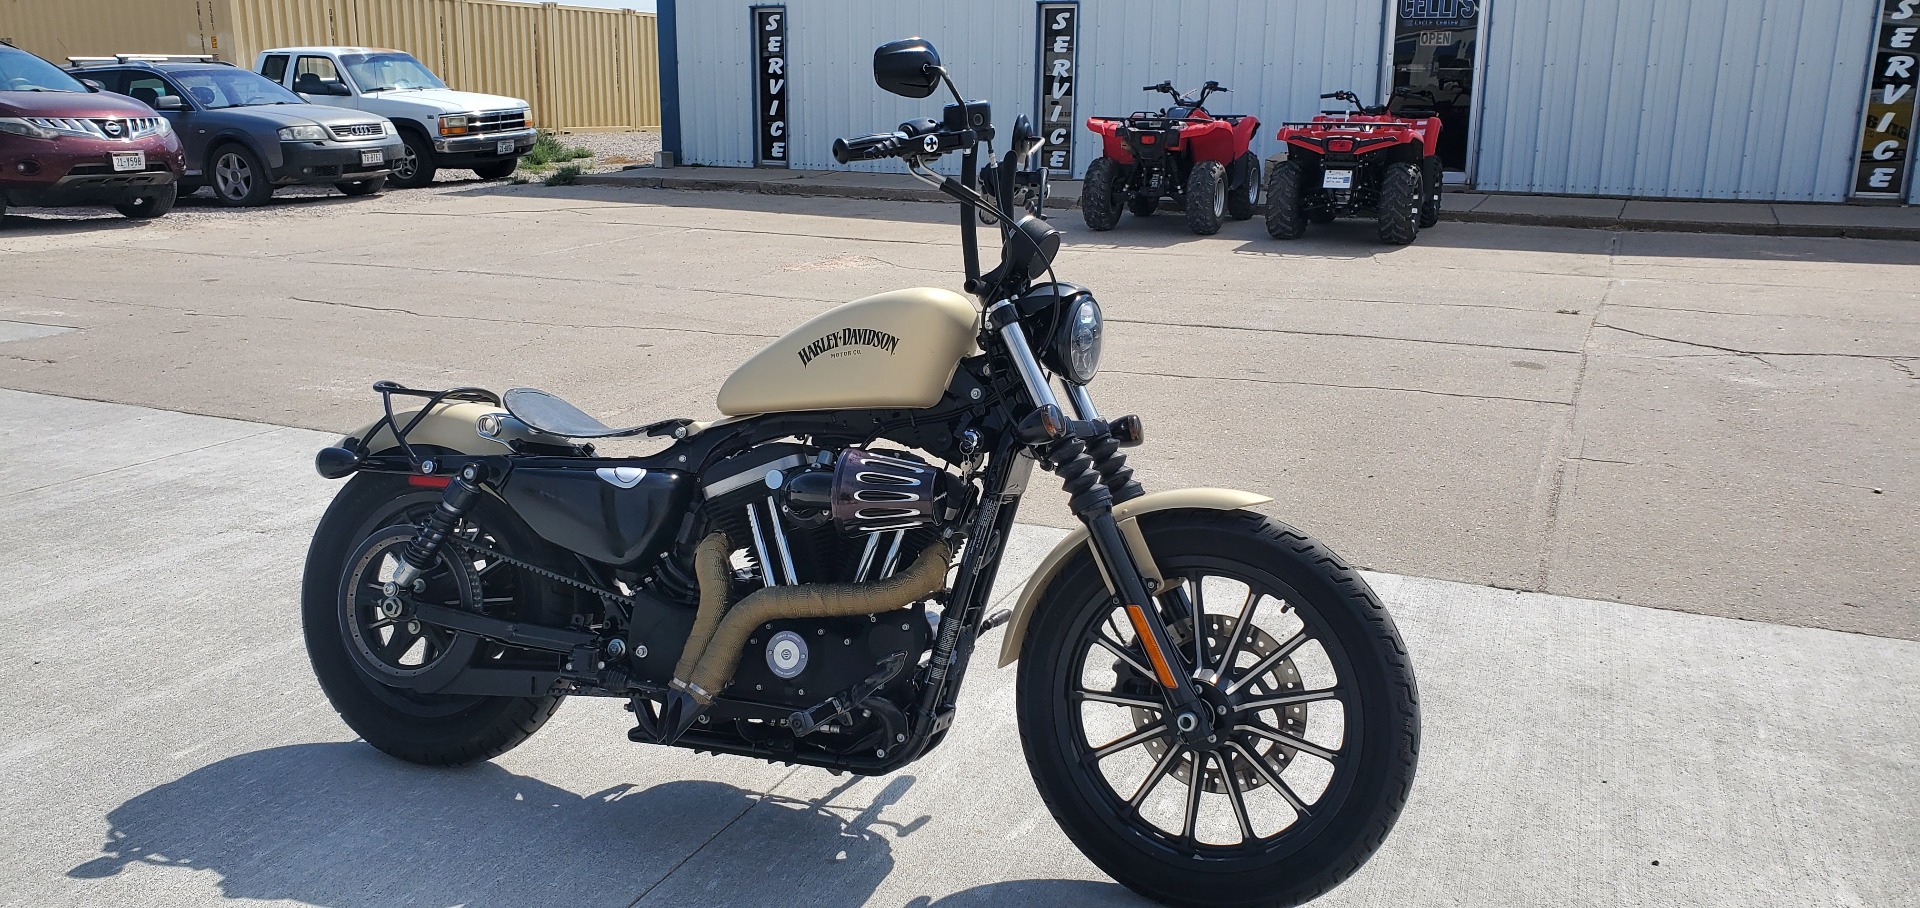 2014 Harley-Davidson Sportster® Iron 883™ in Scottsbluff, Nebraska - Photo 4